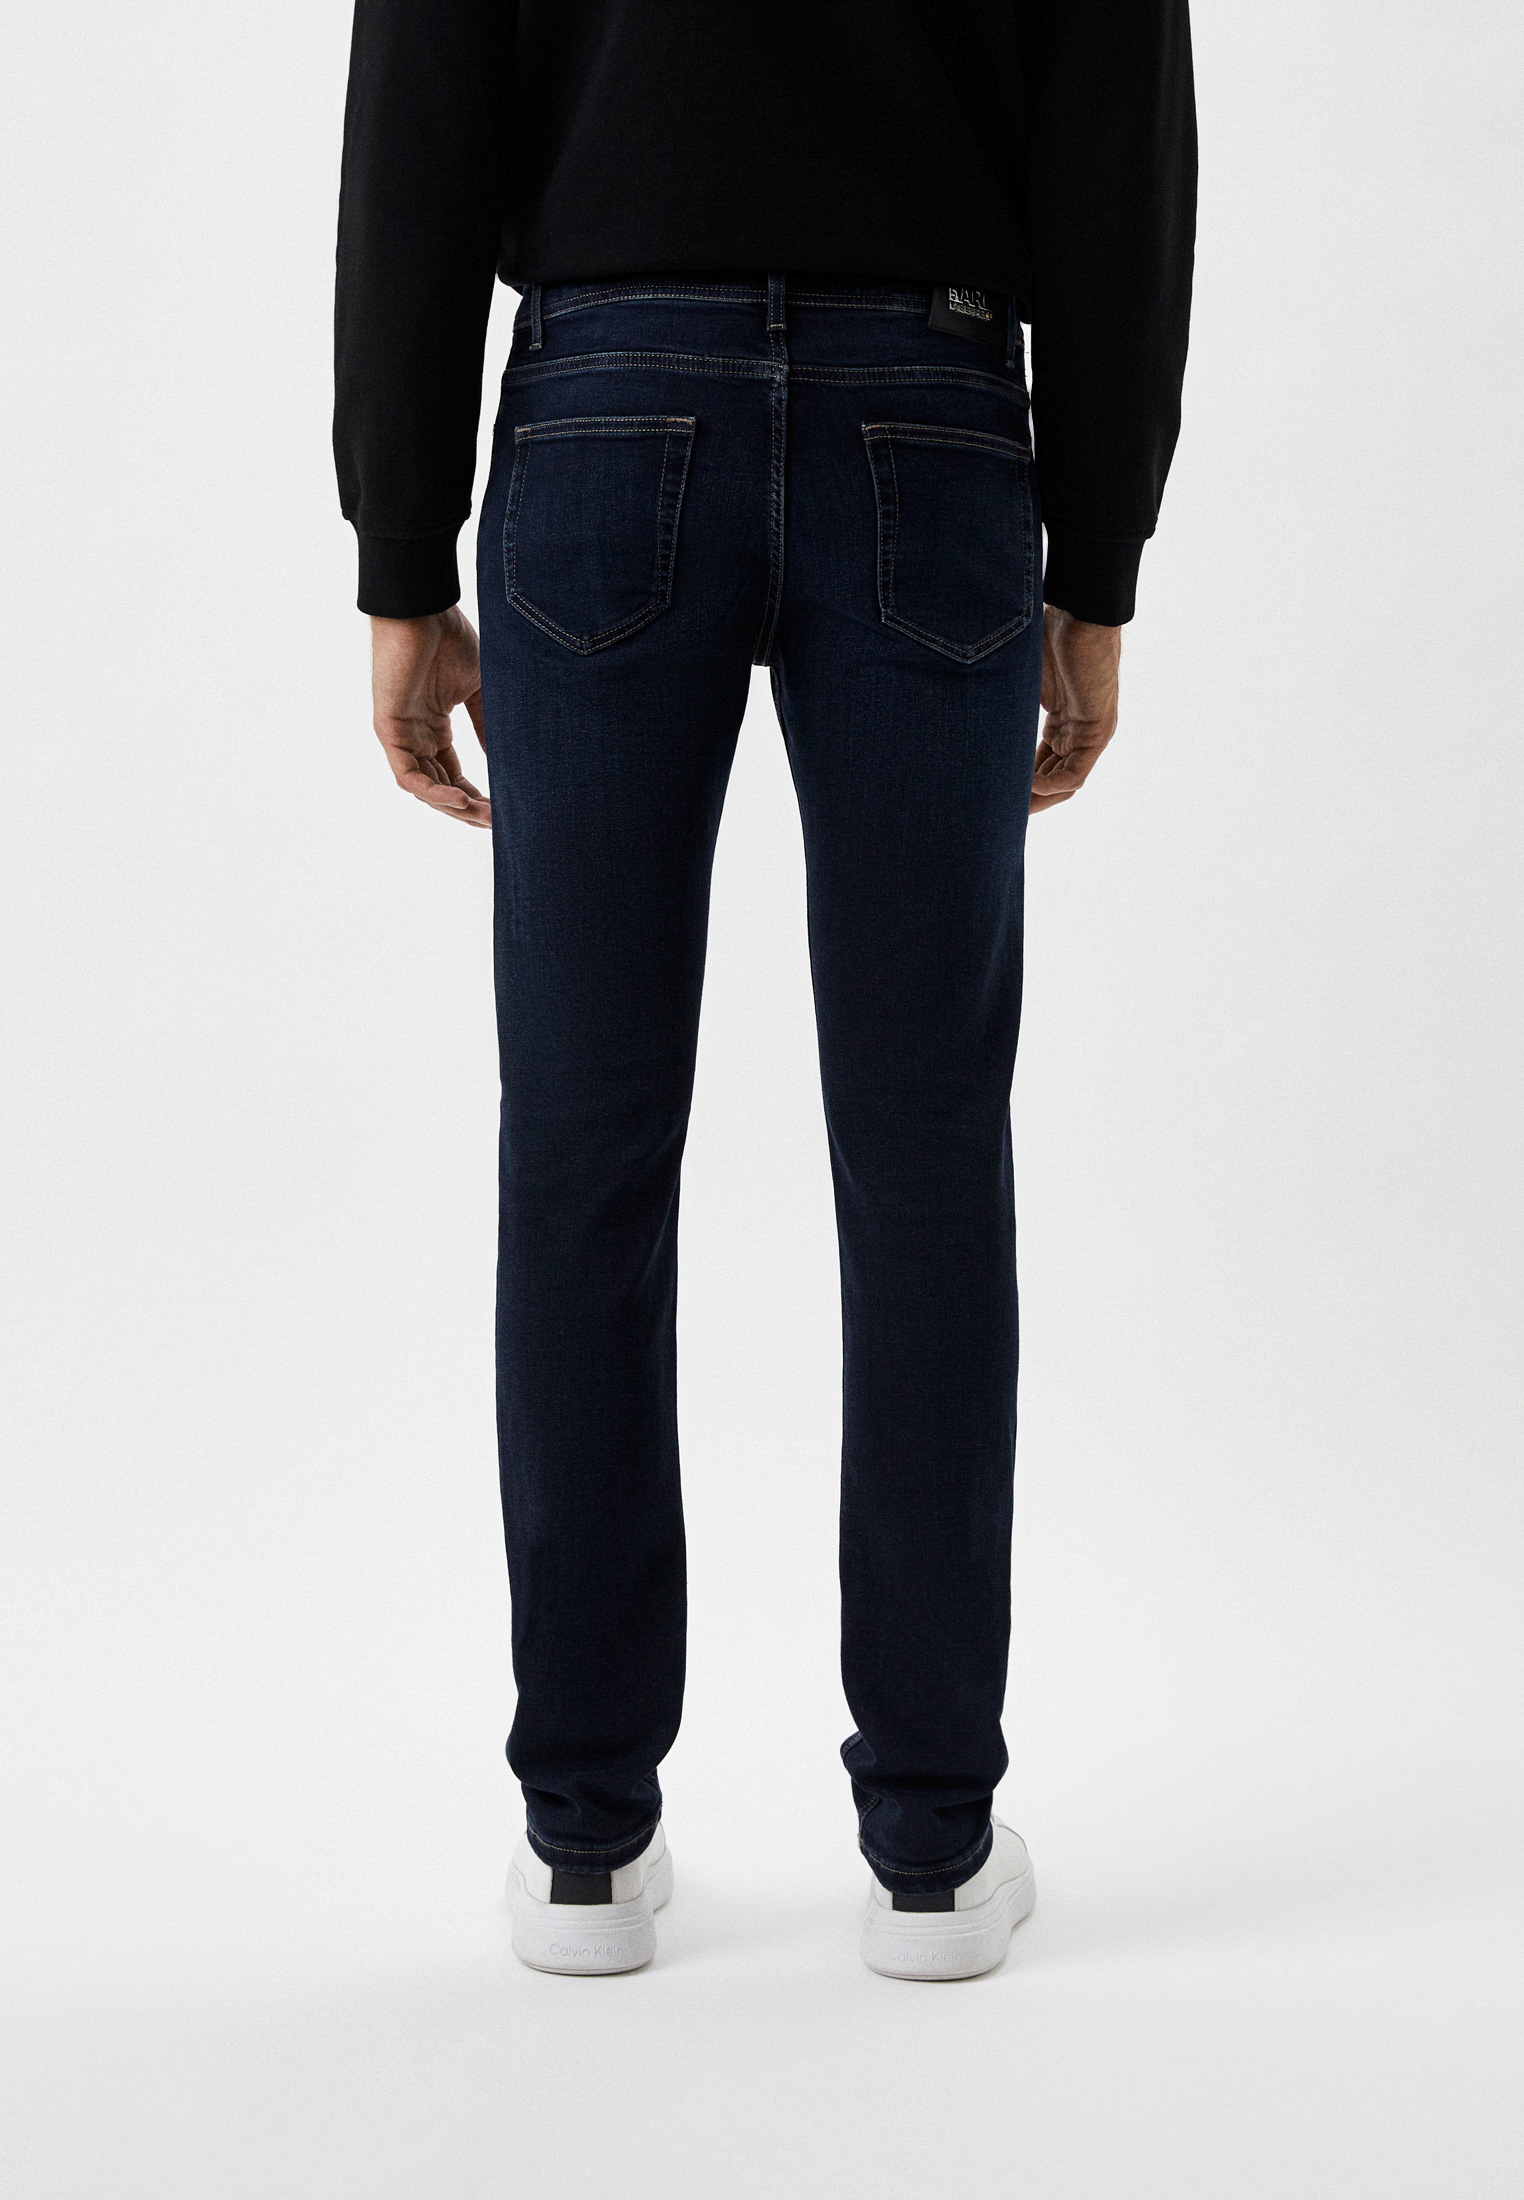 Мужские зауженные джинсы Karl Lagerfeld (Карл Лагерфельд) 265840-500830: изображение 6